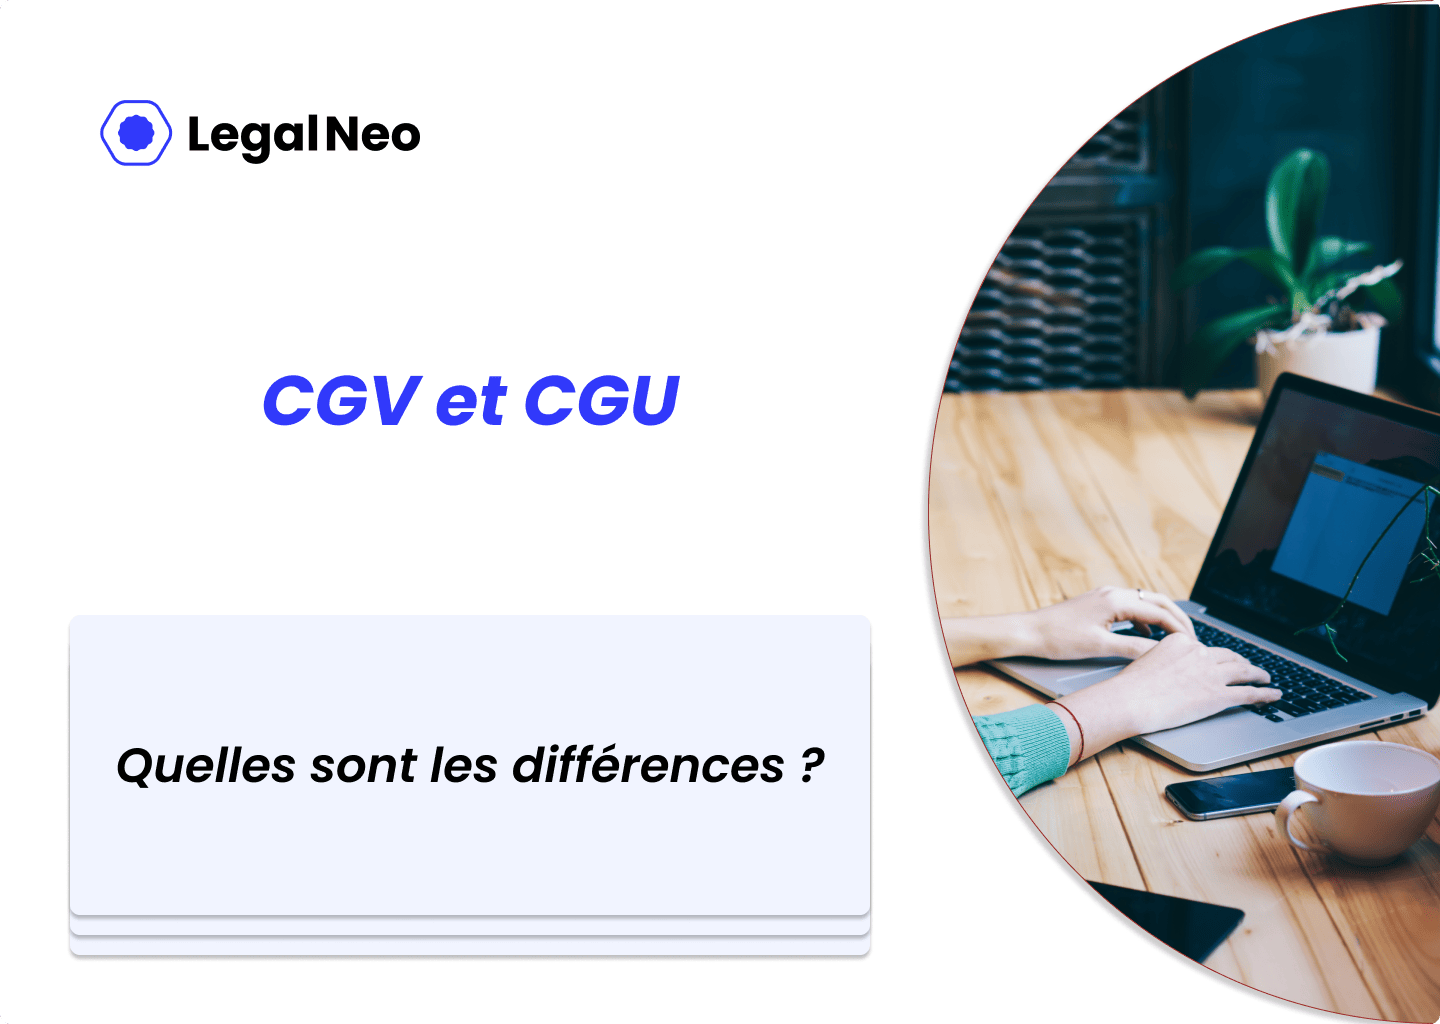 Quelles sont les différences entre les CGV et CGU ?